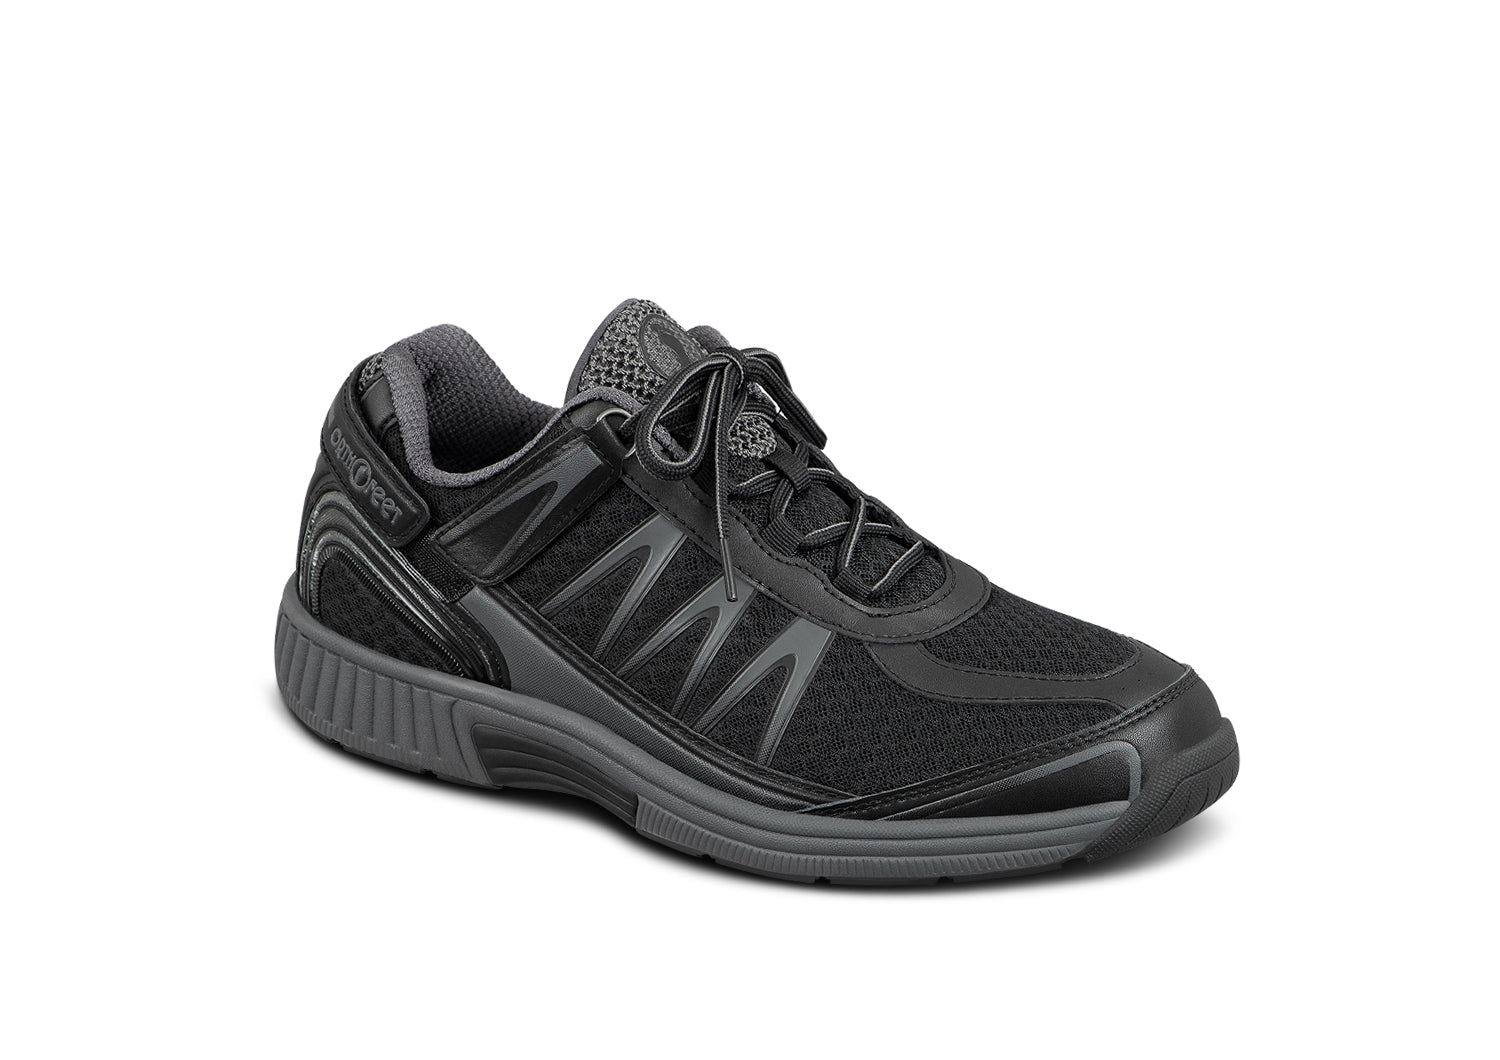 Men's Athletic Shoes No Lace Heel Strap | BioFit Sprint Black